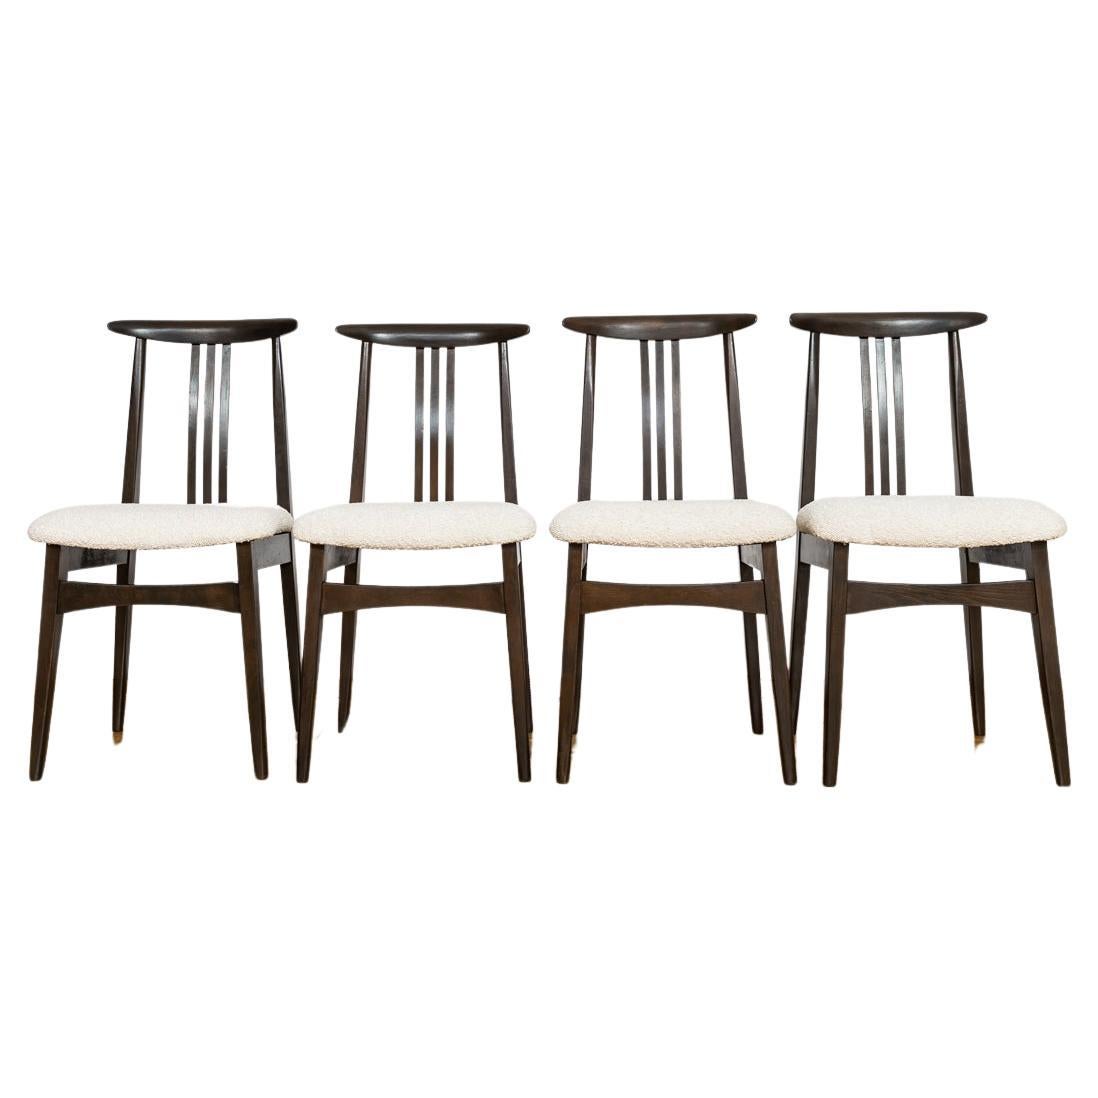 Set of 4, Dining Chairs by M. Zieliński, 1960s